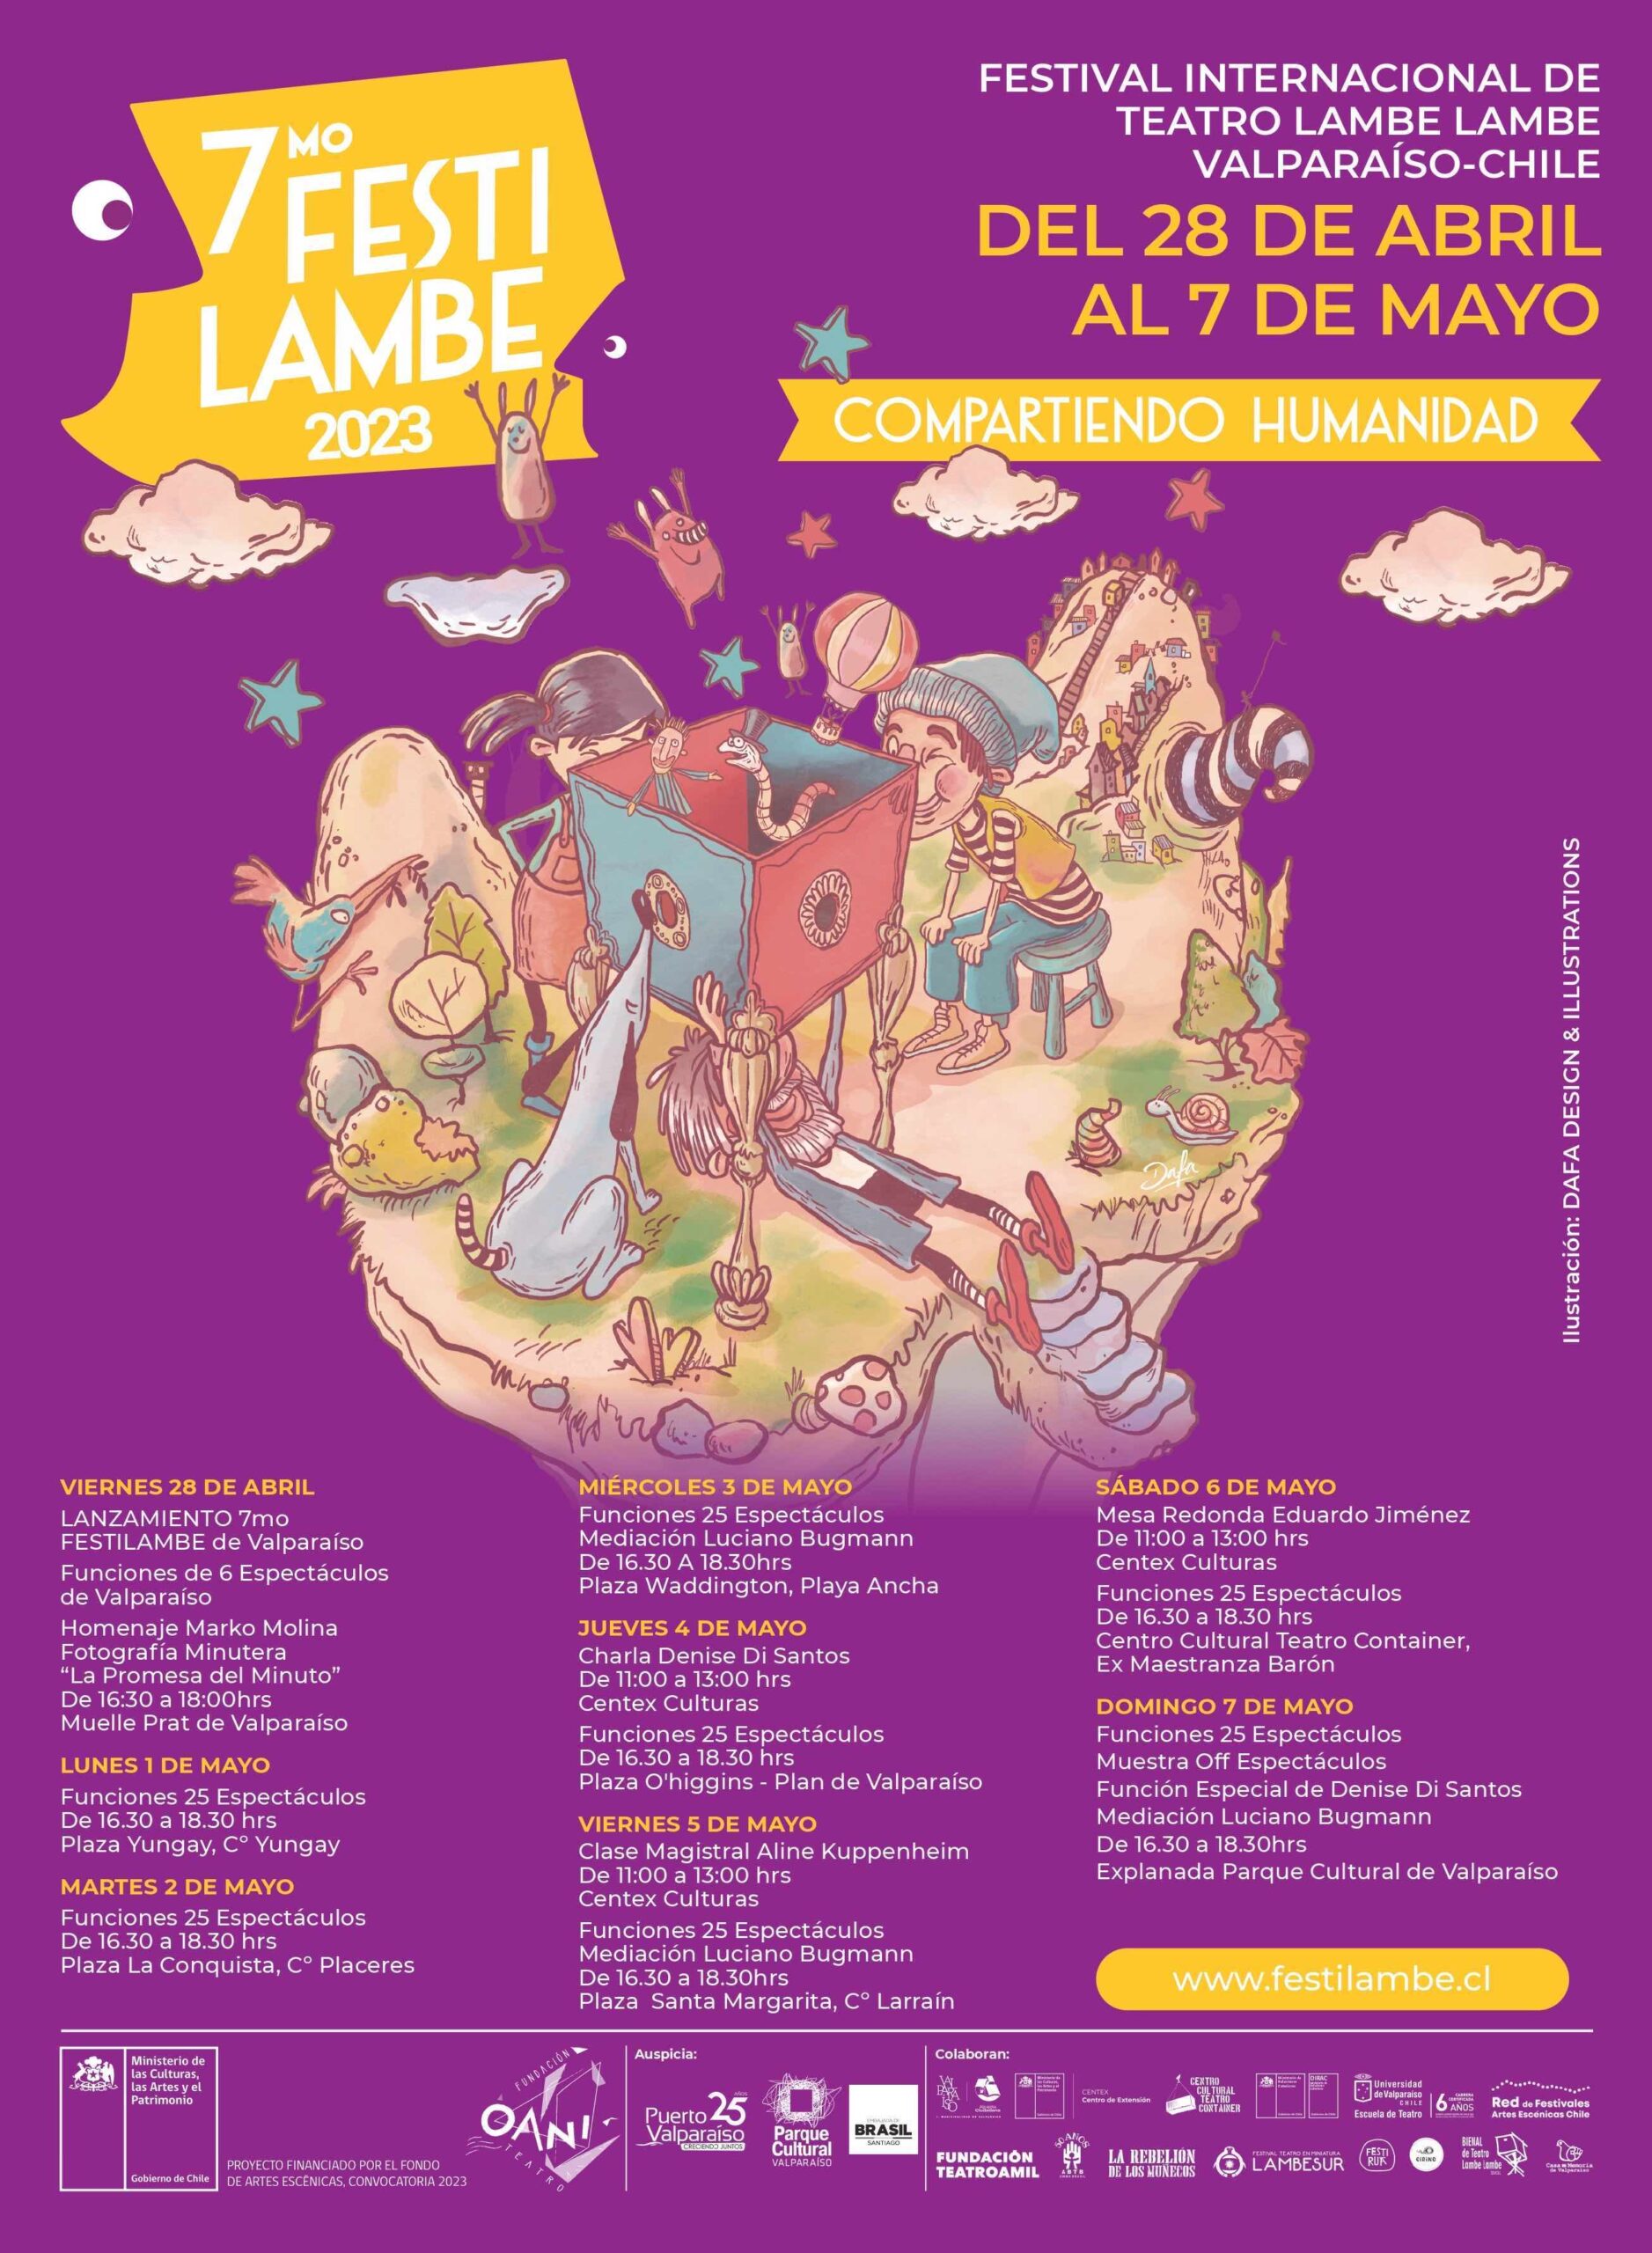 Afiche 7mo FESTILAMBE de Valparaíso